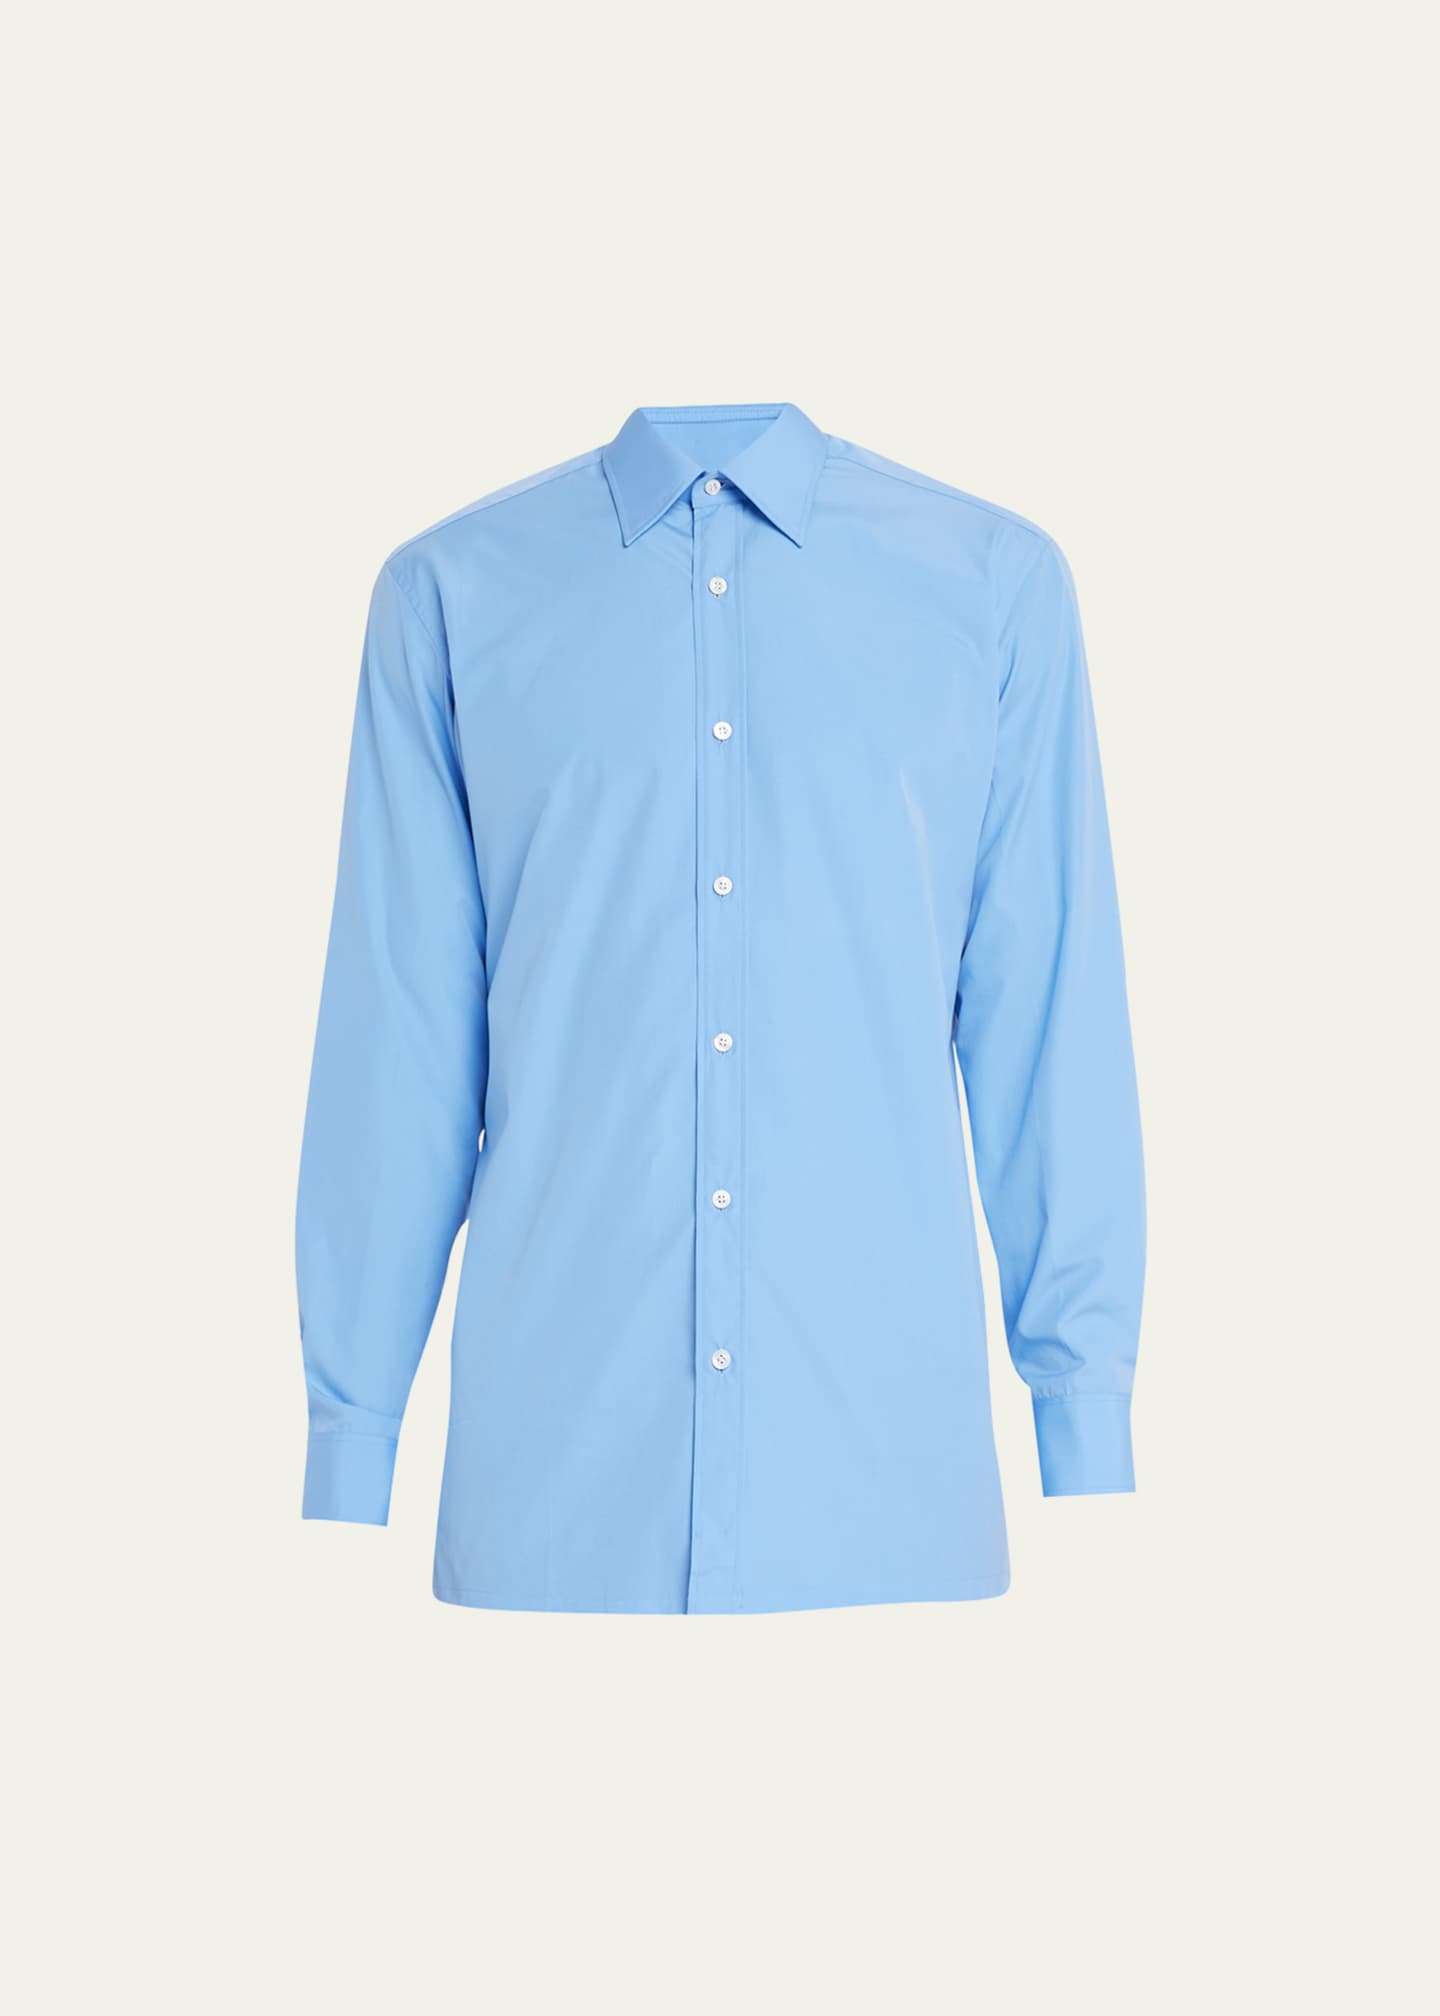 Charvet Men's Cotton Poplin Dress Shirt - Bergdorf Goodman